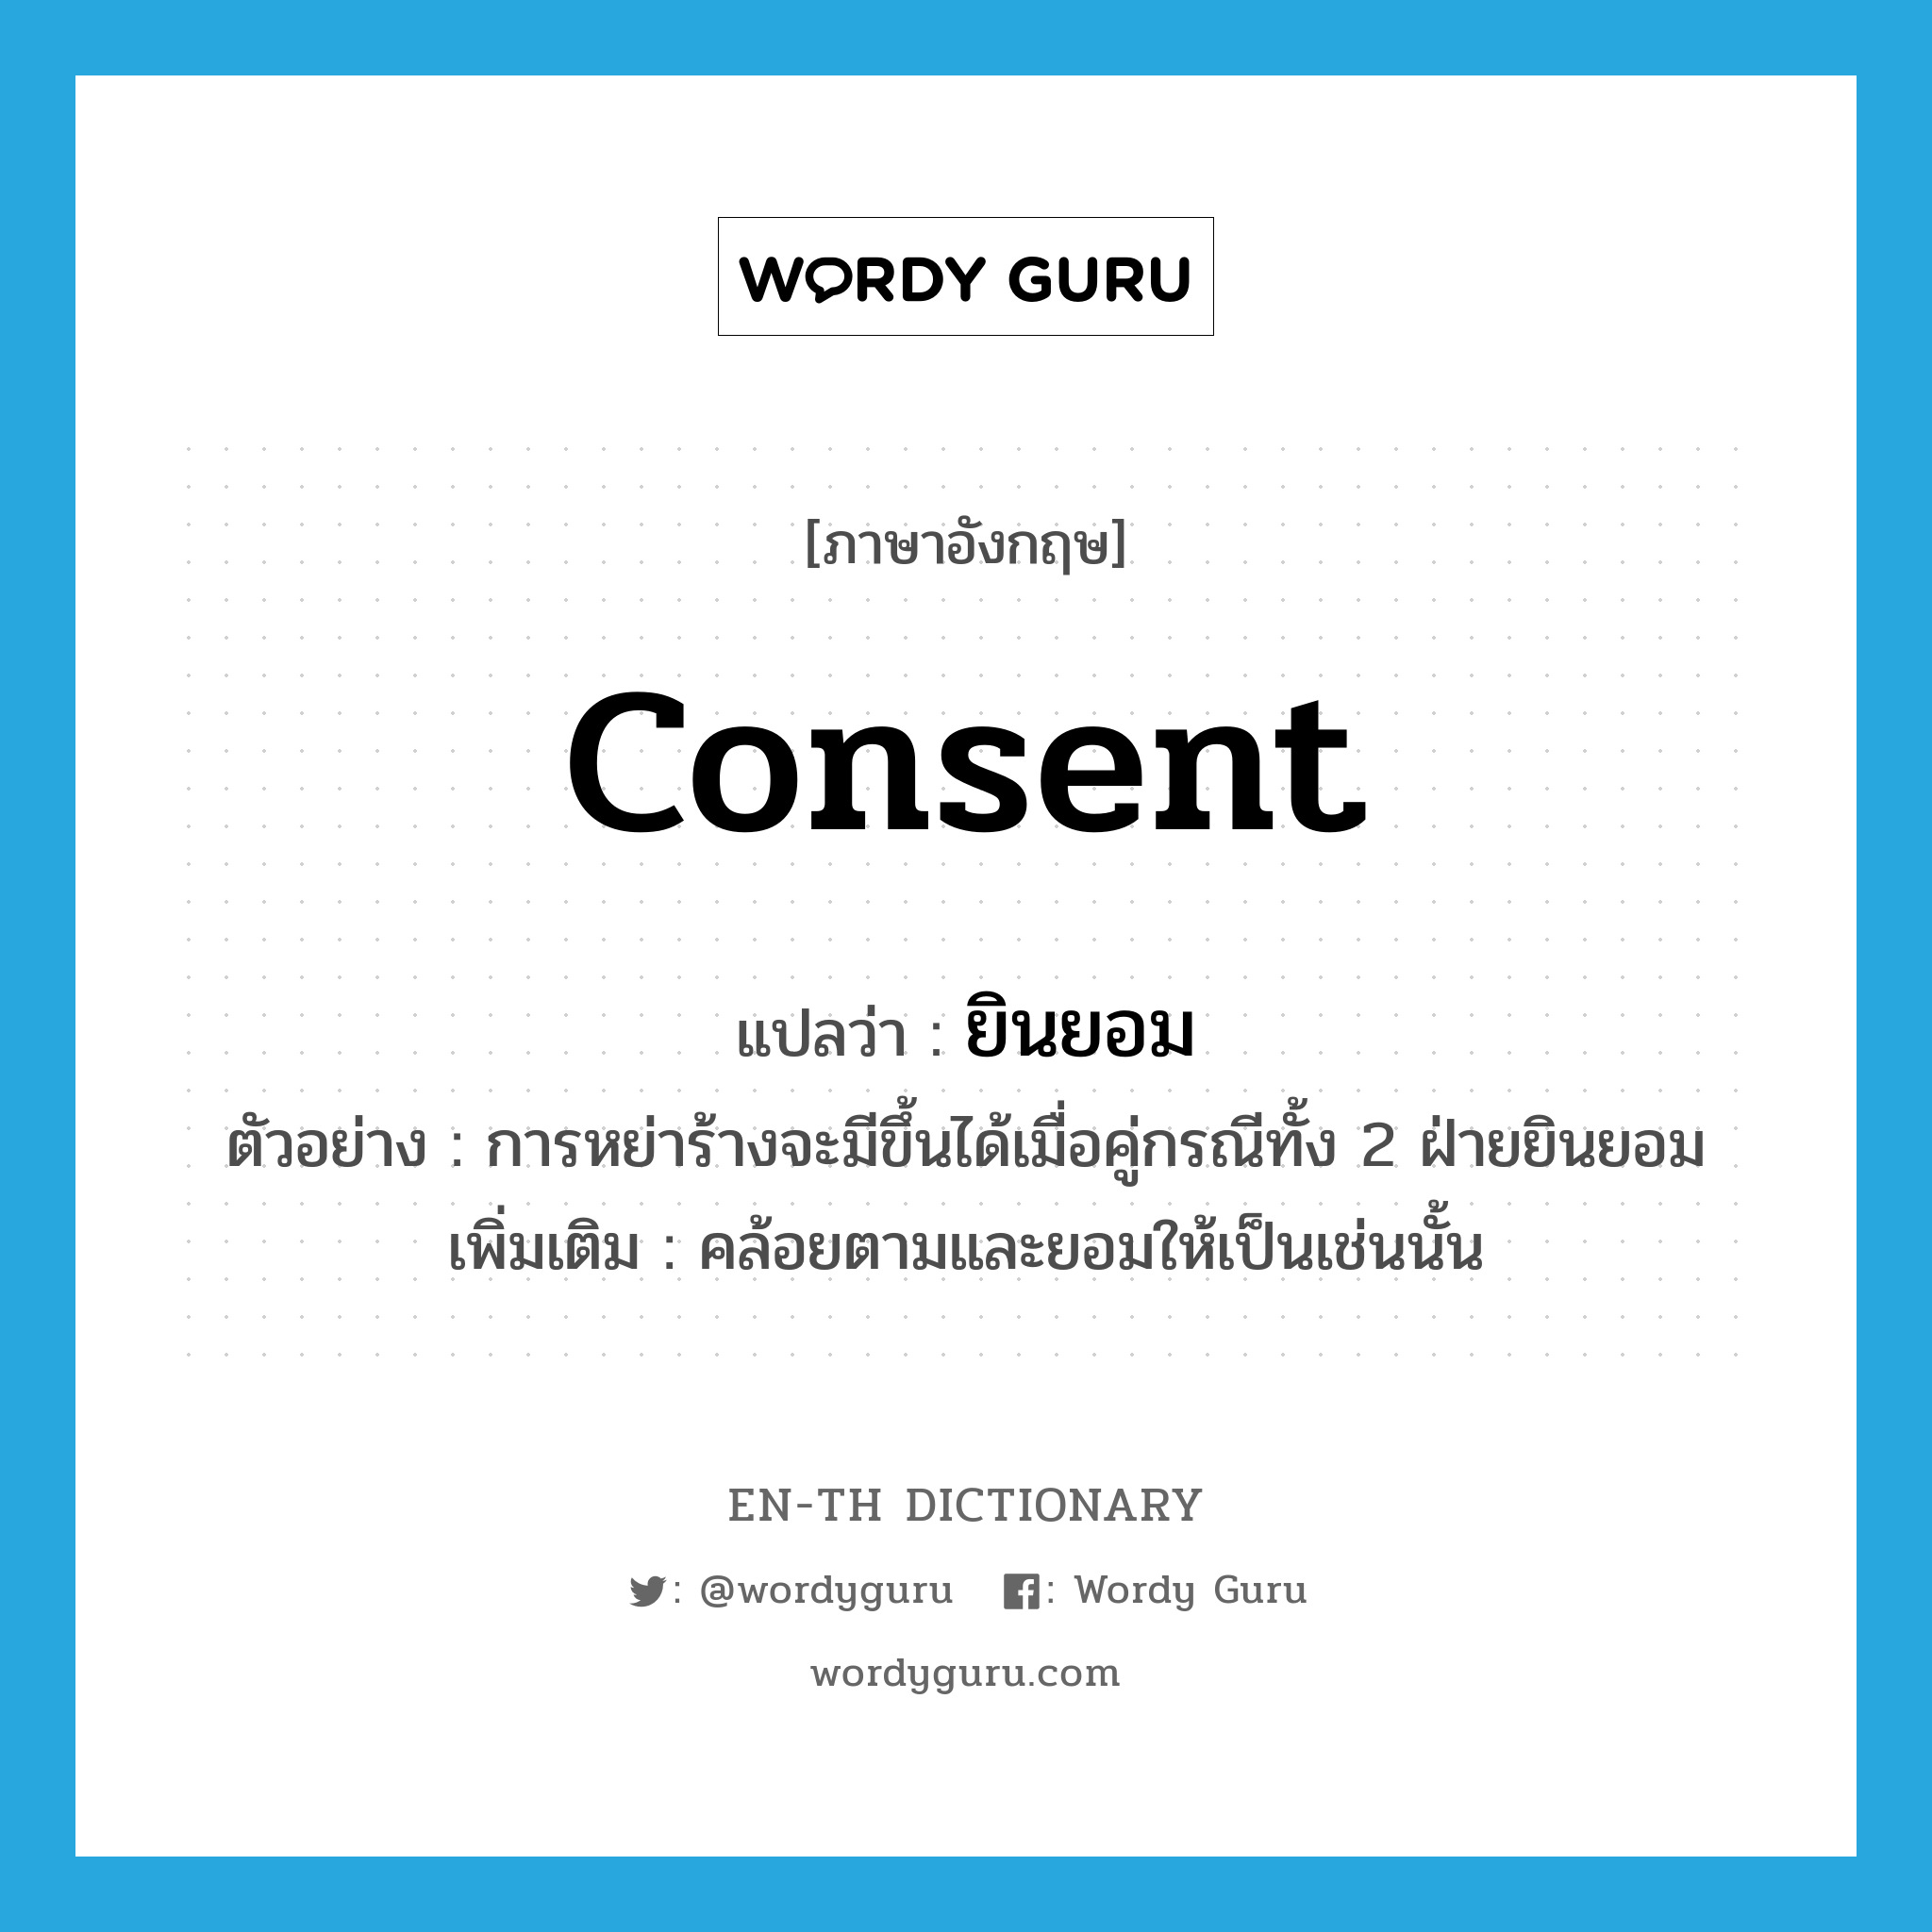 consent แปลว่า?, คำศัพท์ภาษาอังกฤษ consent แปลว่า ยินยอม ประเภท V ตัวอย่าง การหย่าร้างจะมีขึ้นได้เมื่อคู่กรณีทั้ง 2 ฝ่ายยินยอม เพิ่มเติม คล้อยตามและยอมให้เป็นเช่นนั้น หมวด V